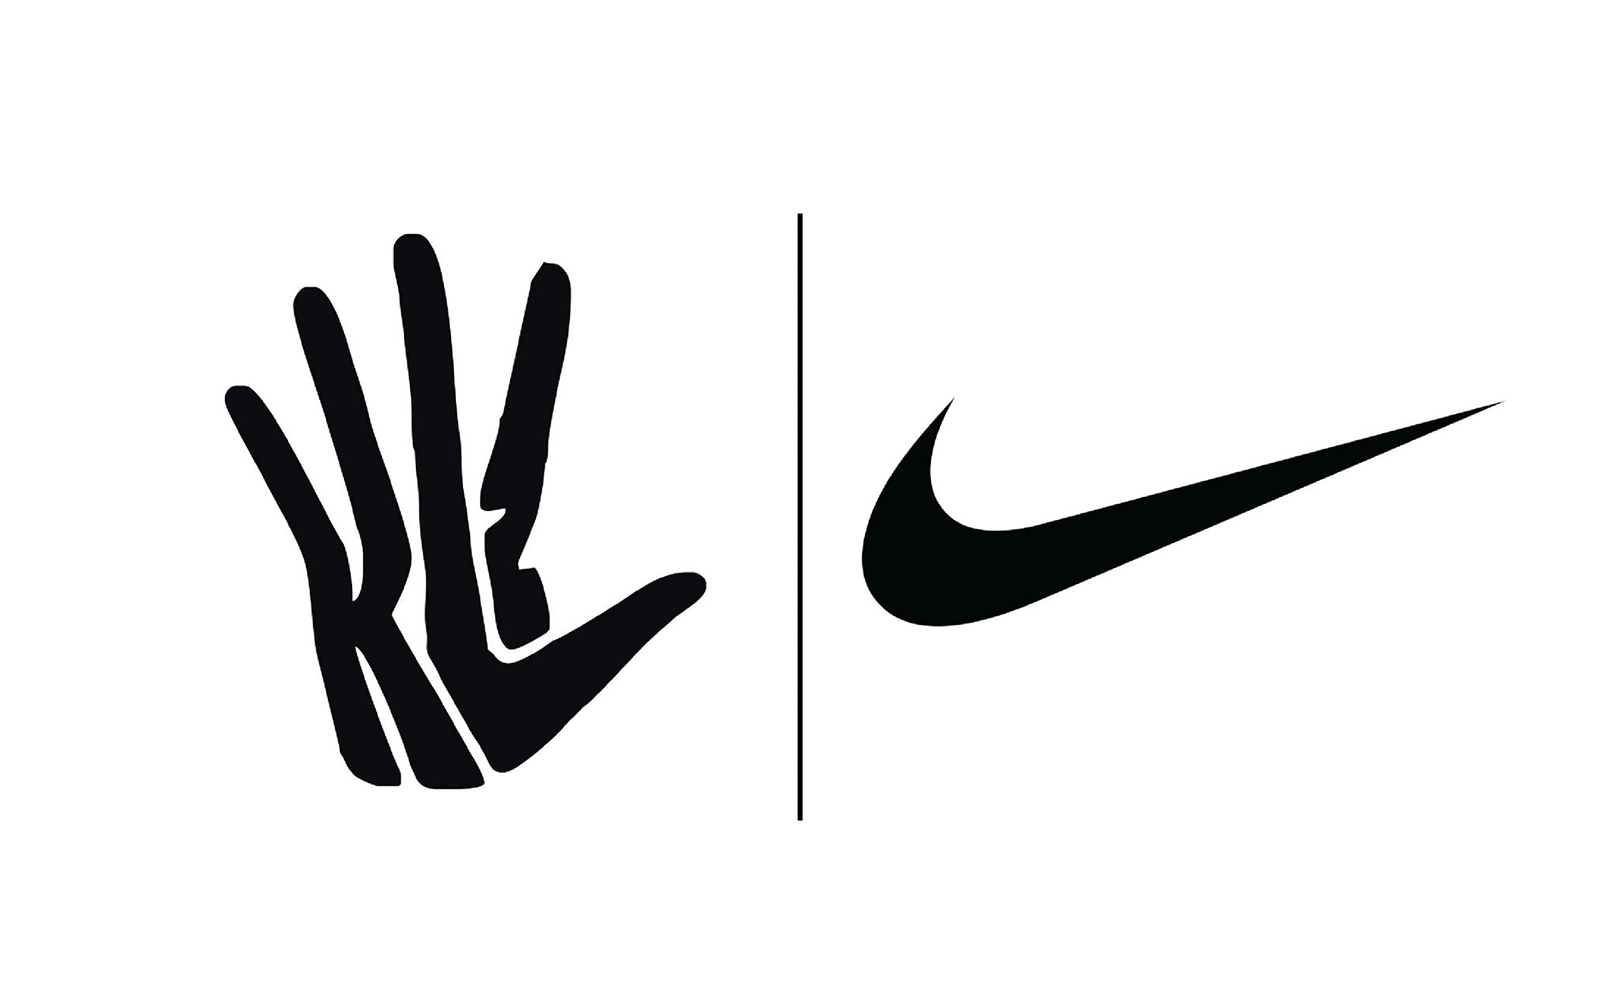 Vertrouwelijk Op het randje bellen The legal battle between Nike and Kawhi Leonard